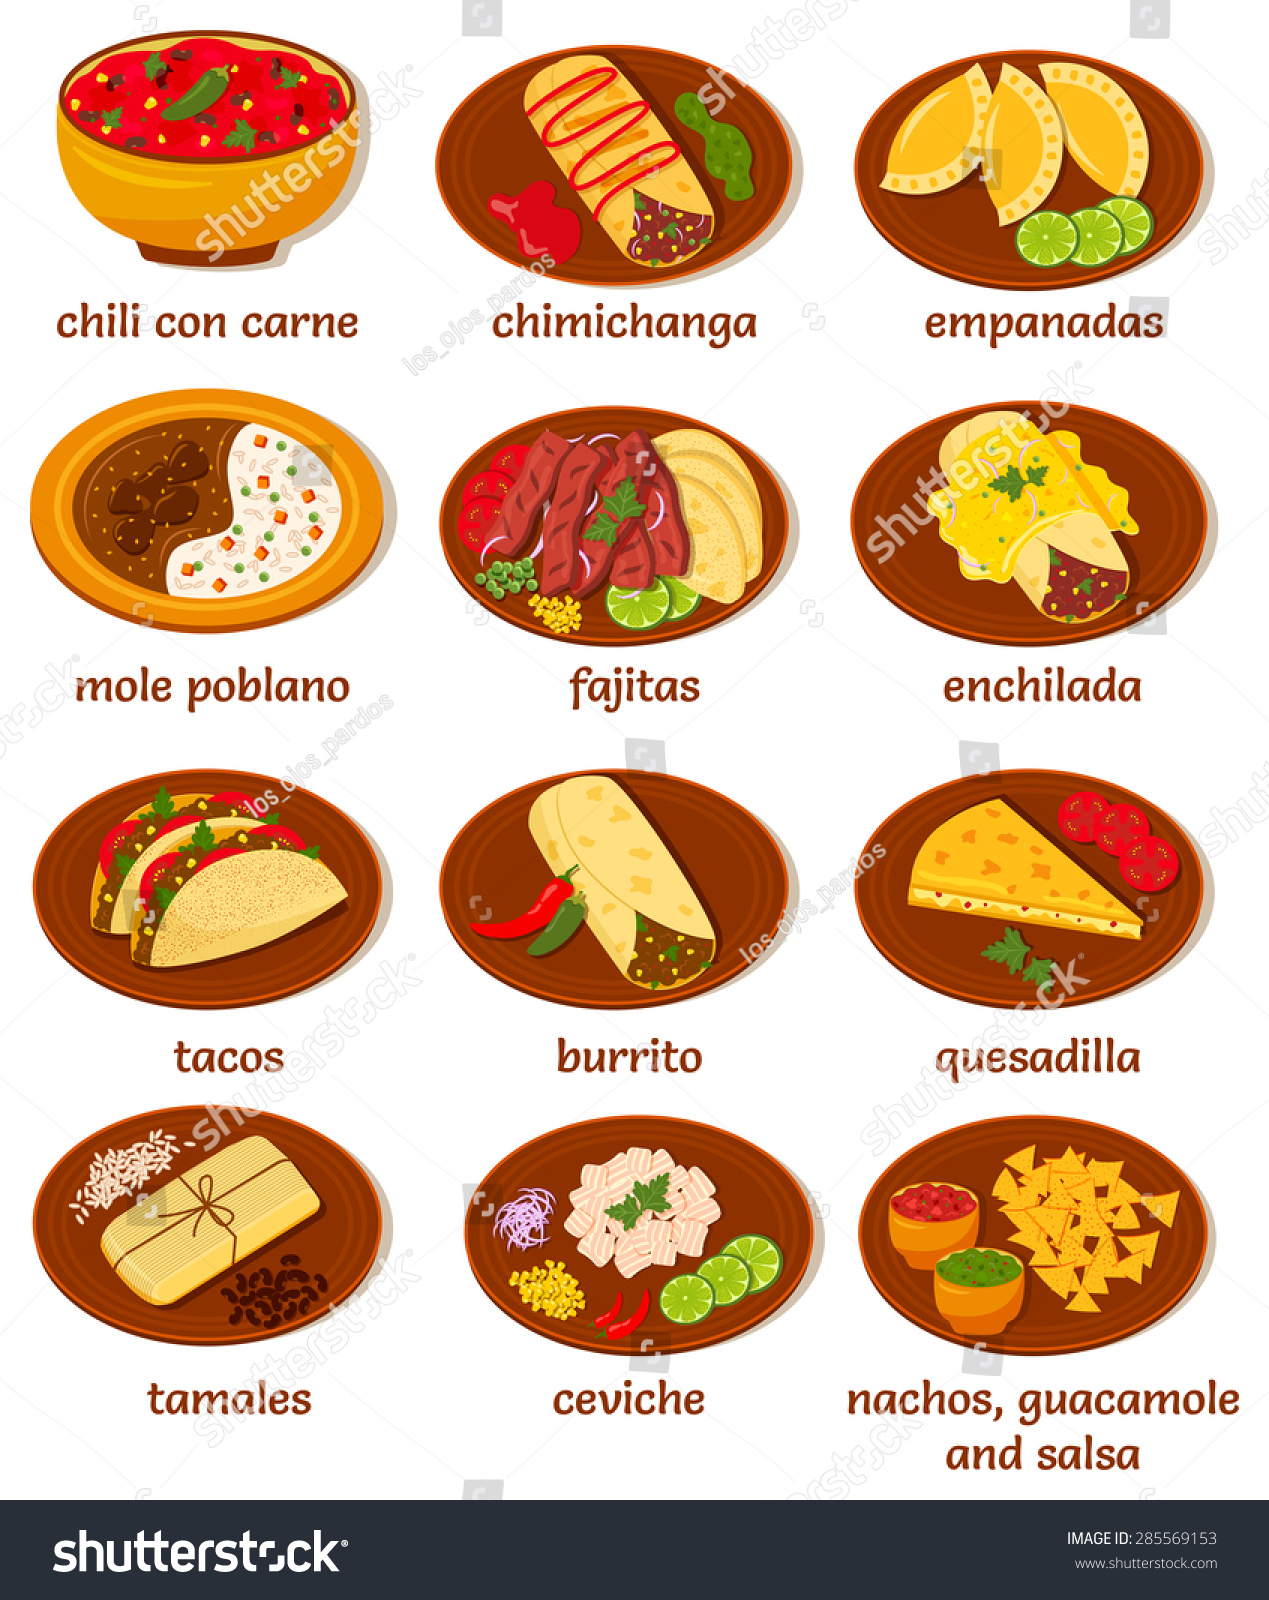 SVG of set of vector illustrations of  mexican food: chili con carne, chimichanga, empanadas, mole poblano, fajitas, enchilada, tacos, burrito, quesadilla, tamales, ceviche, nachos, guacamole, salsa svg